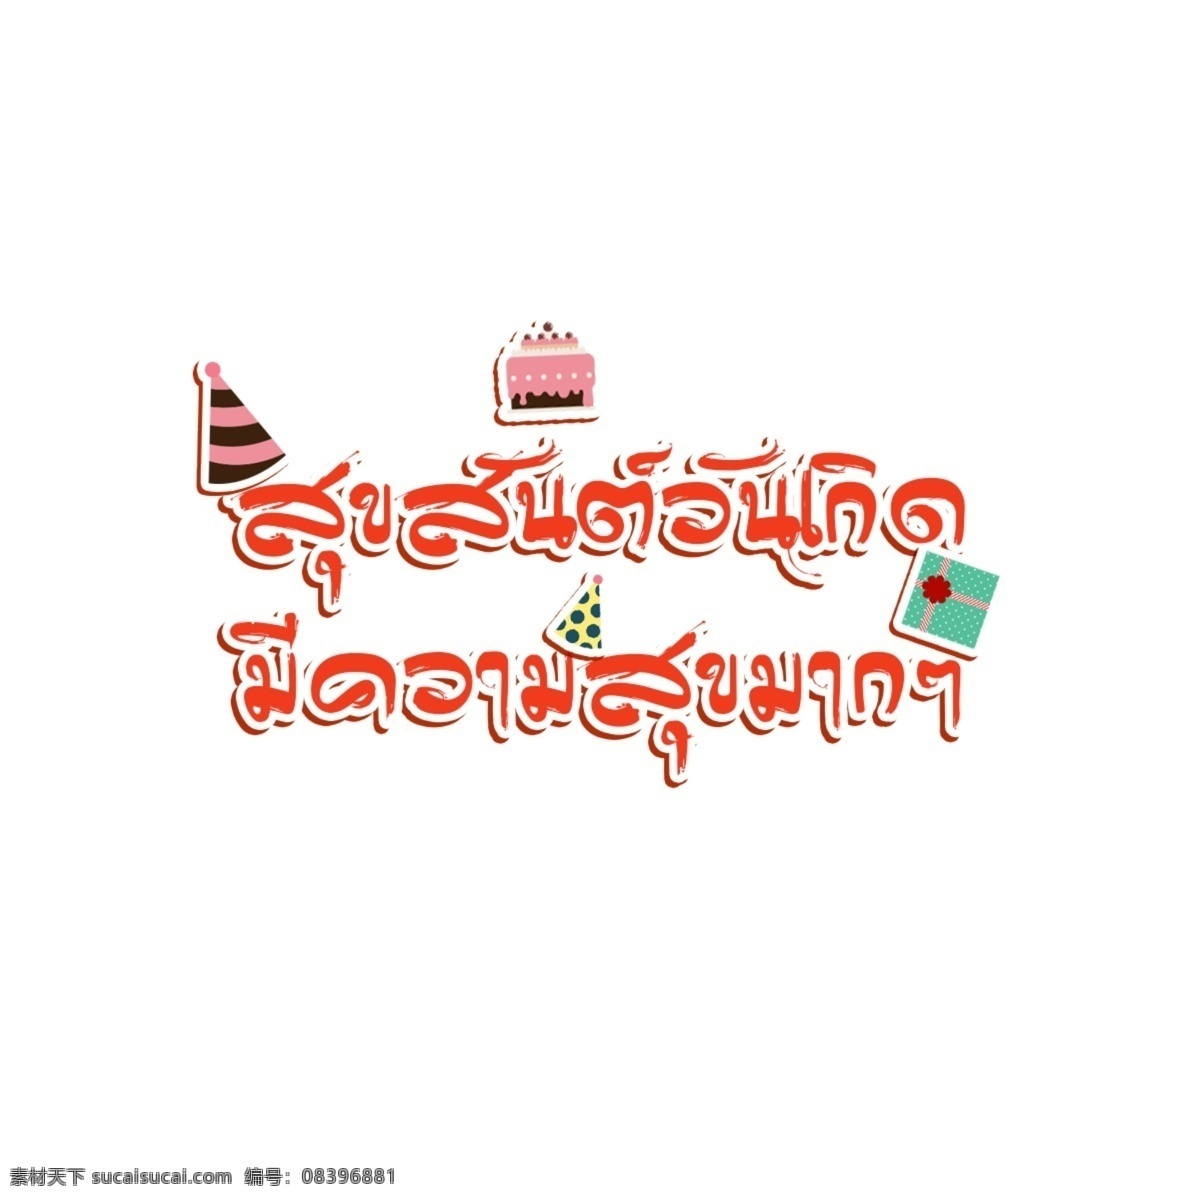 生日 快乐 蛋糕 礼物 桃红色 祝福 红色条纹 粉 生日快乐 很高兴 生日聚会 蛋糕礼物